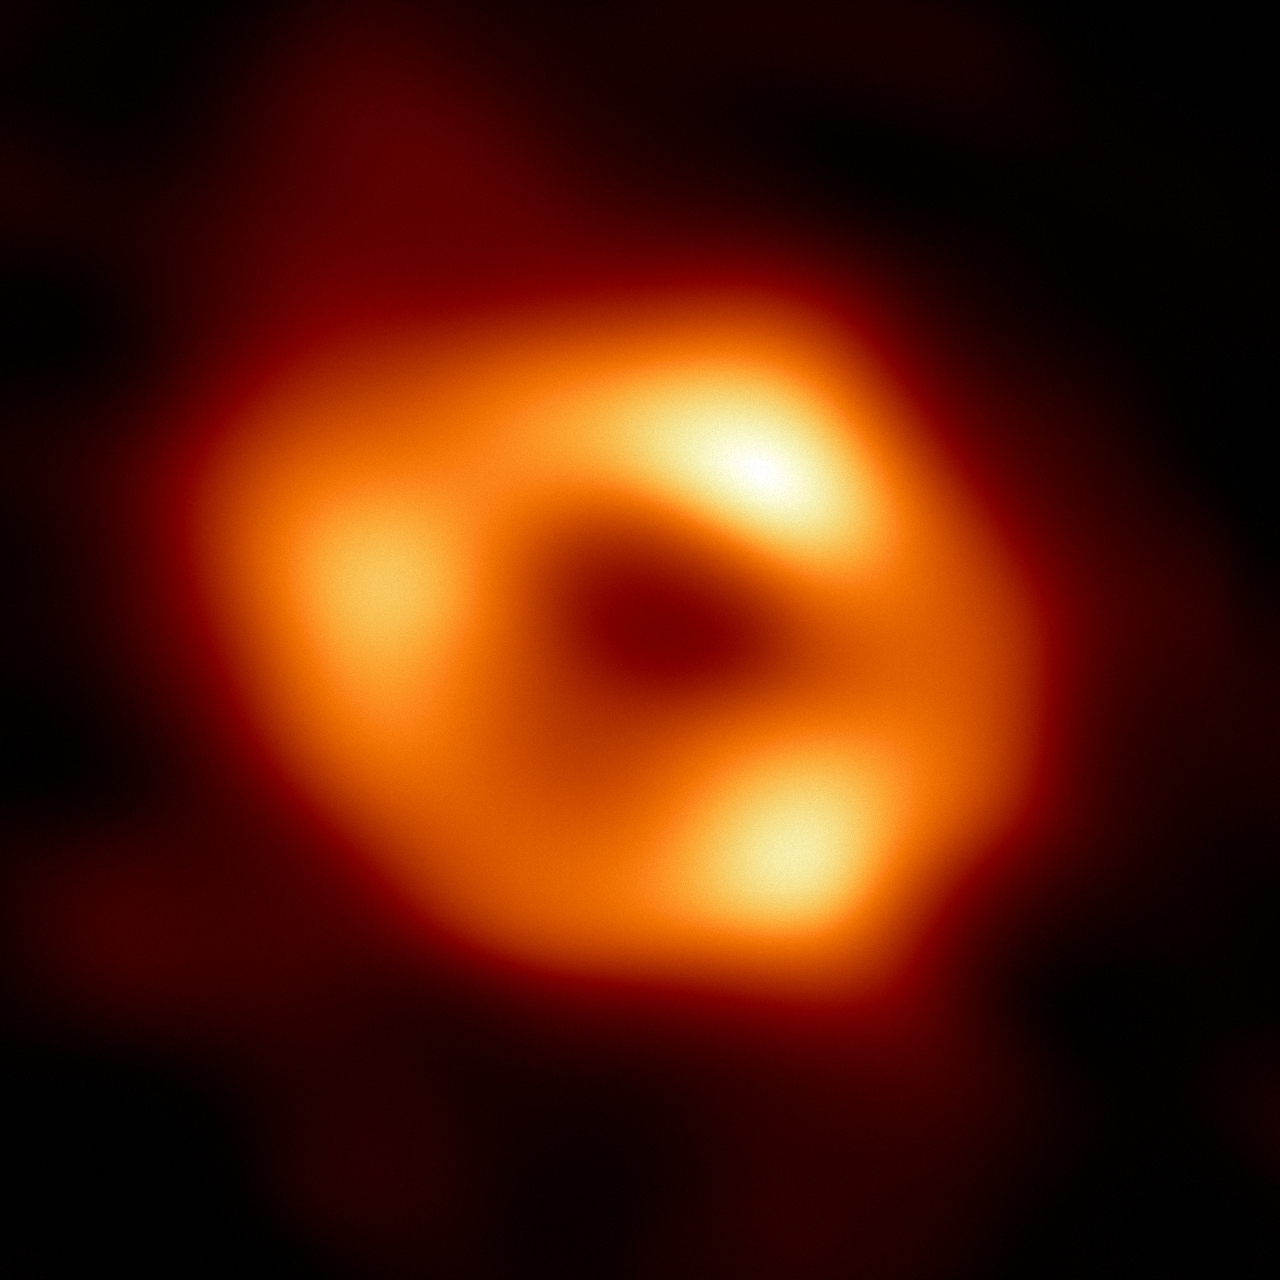 первое изображение черной дыры Стрелец А* 